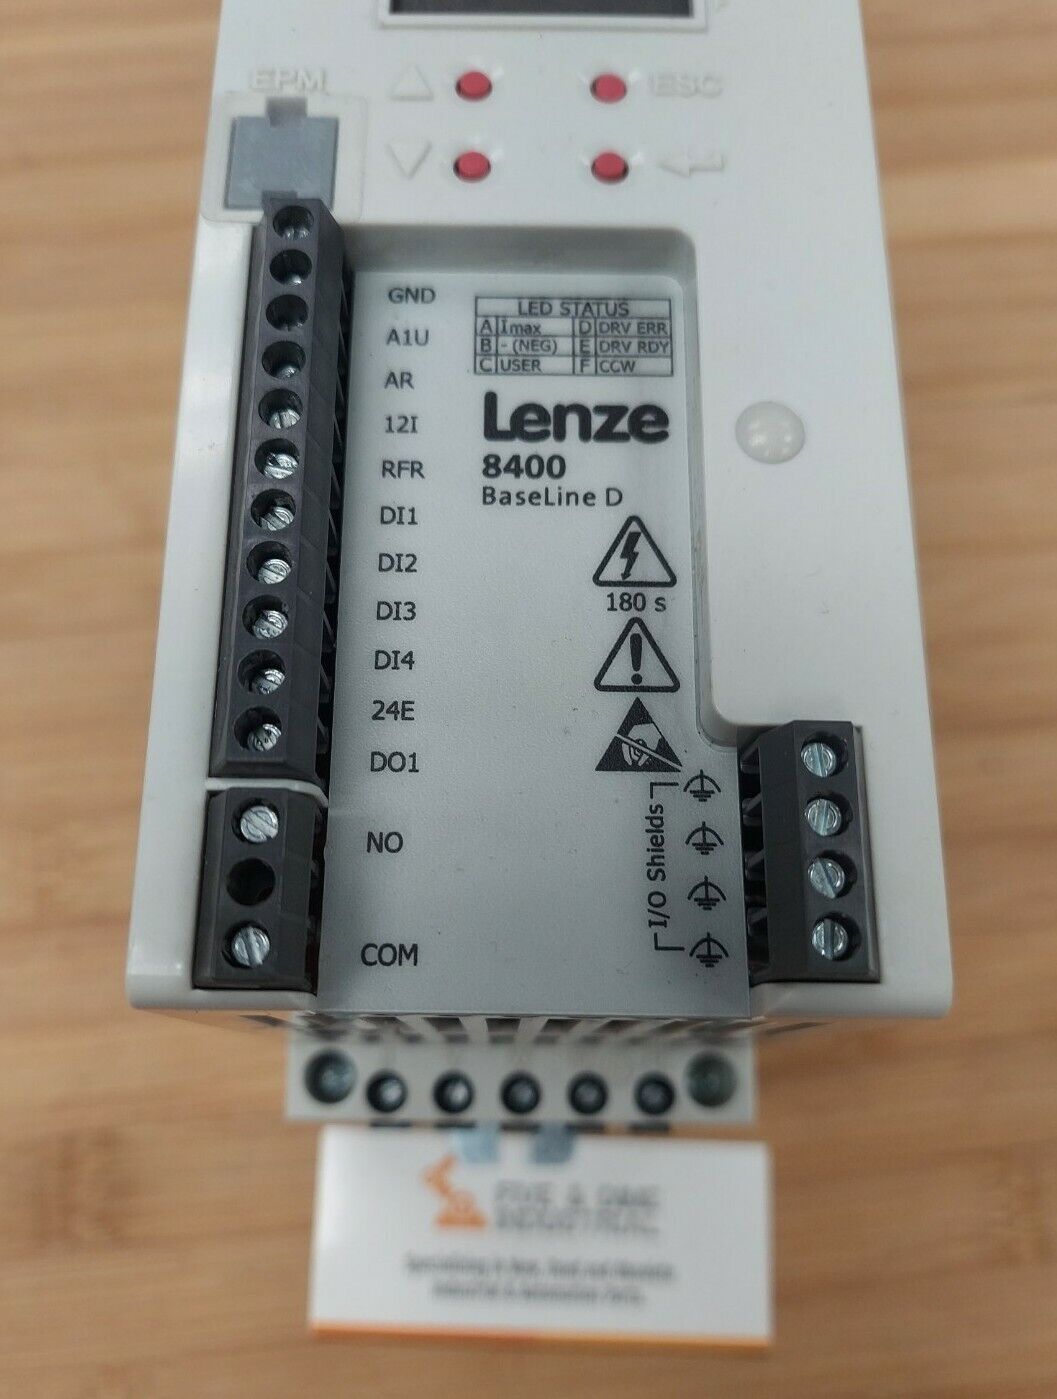 Lenze 8400 BaseLine D Inverter Drive | E84avbde3714sxo (GR193)